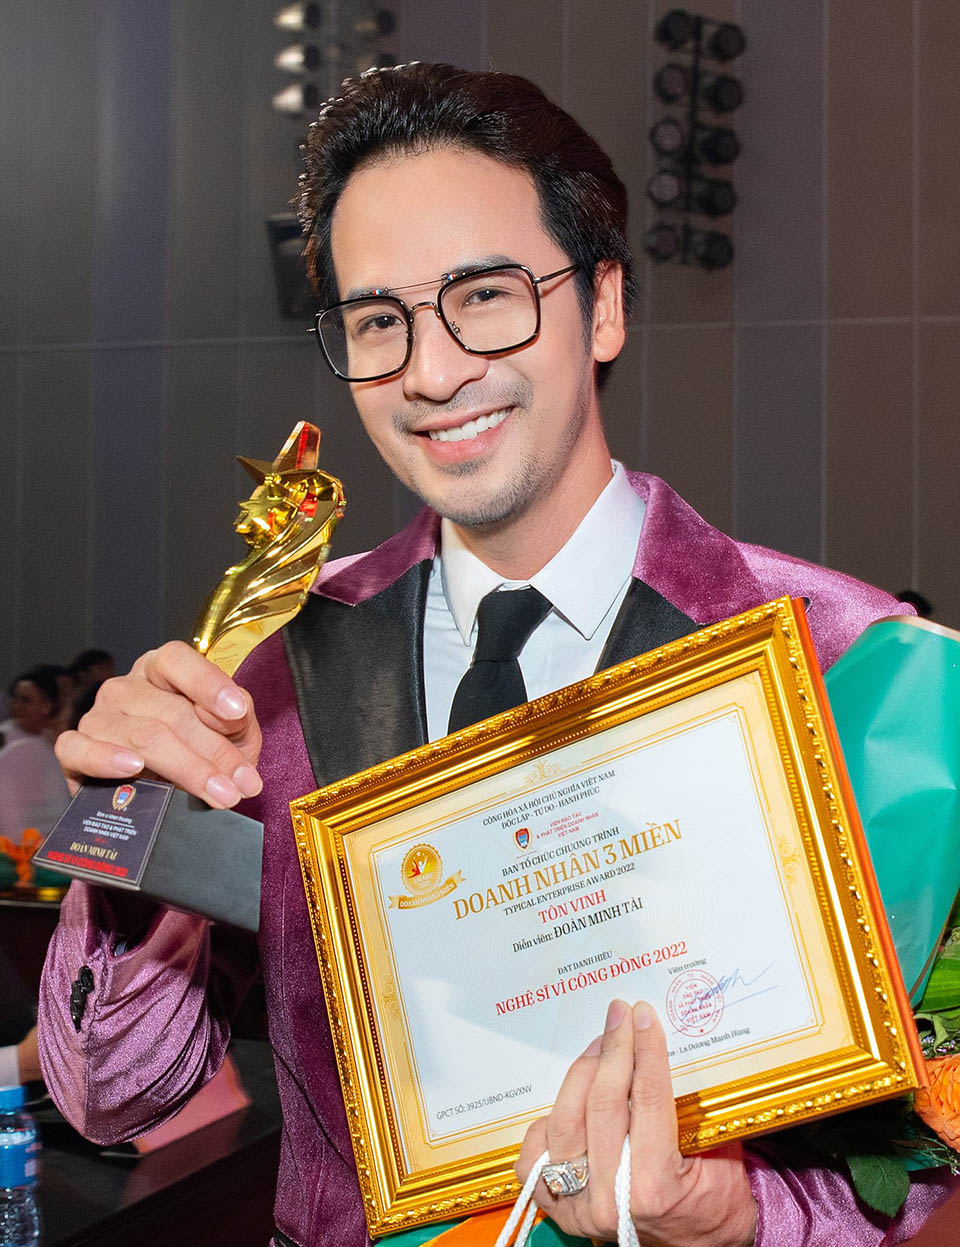 Đoàn Minh Tài nhận danh hiệu “Nghệ sĩ vì cộng đồng 2022” - 2